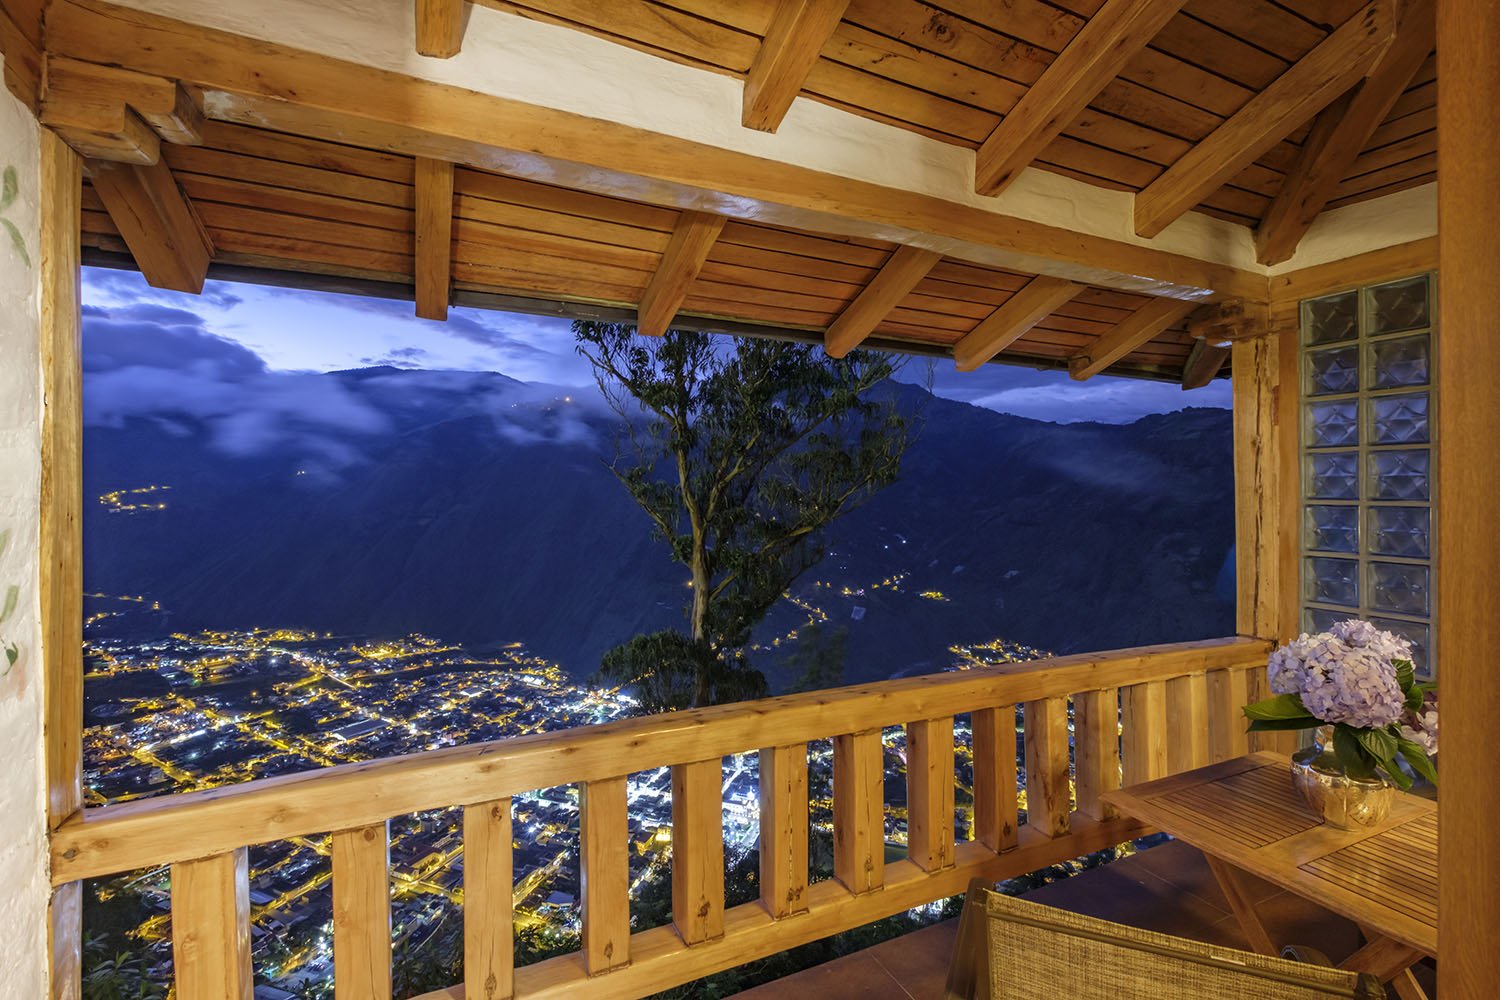 Balcony Romantic Room Cancion de Amor 36 - Luna Volcan - Hotel en Banos Ecuador.jpg